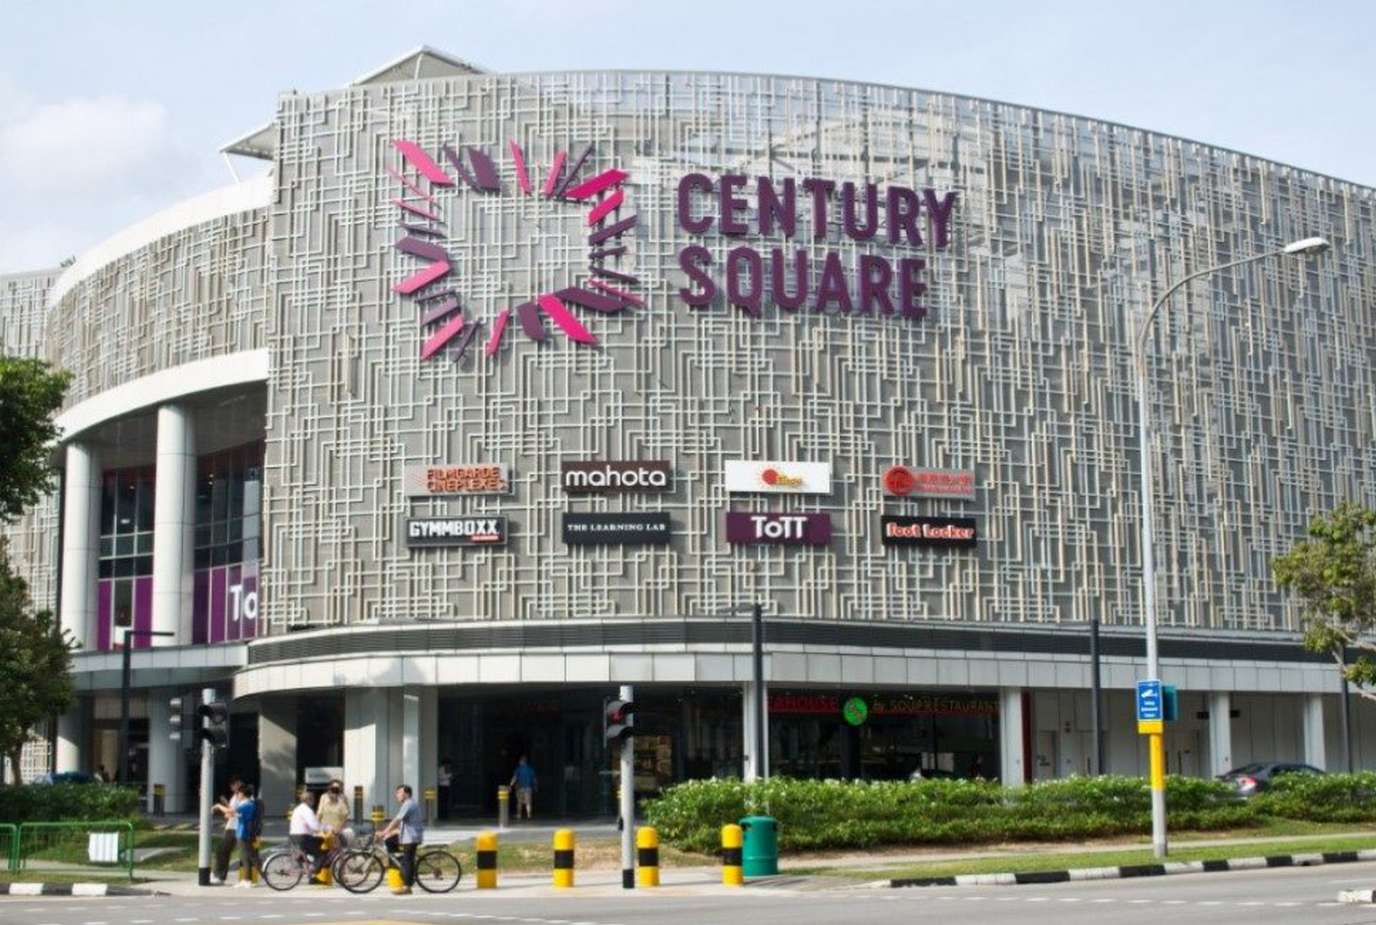 Century Square